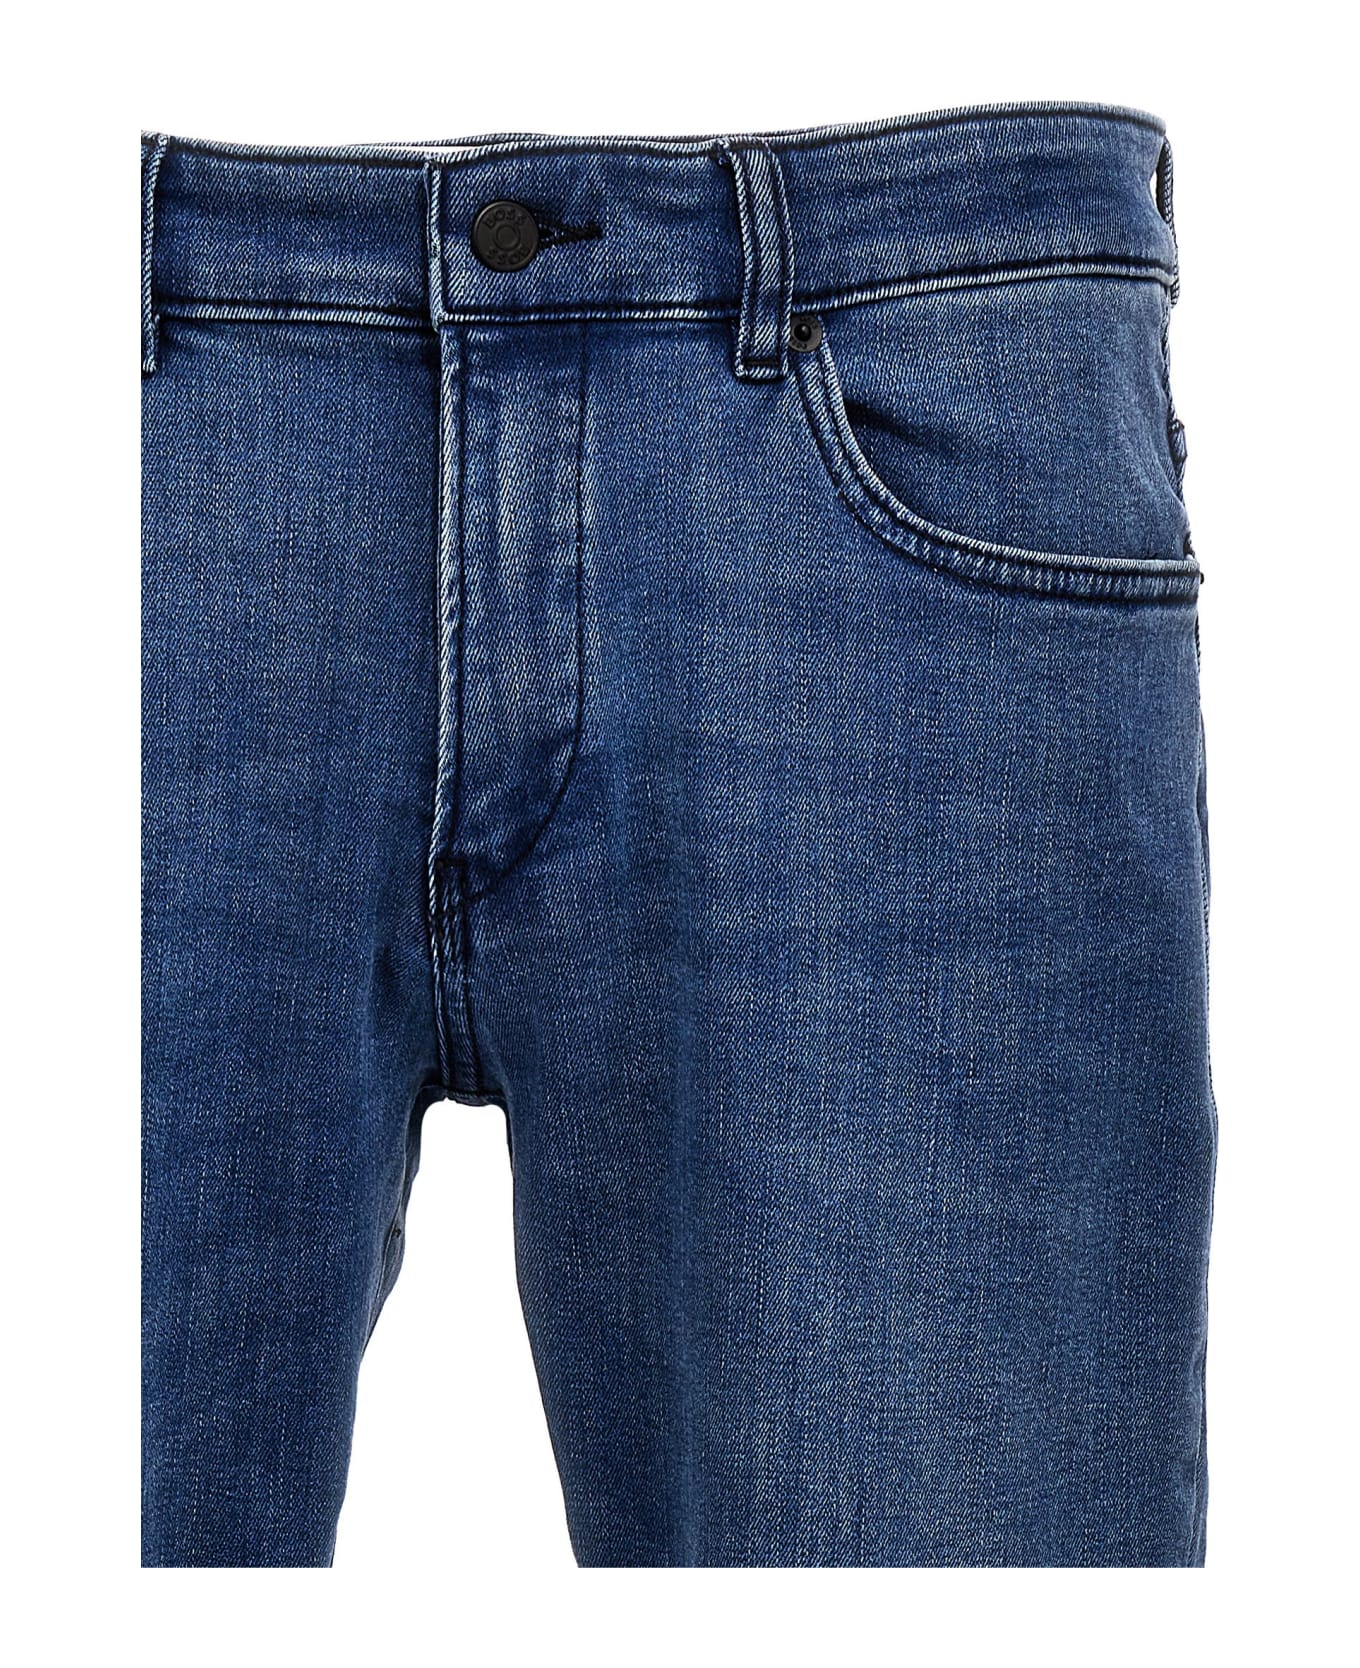 Hugo Boss 'delaware' Jeans - Blue